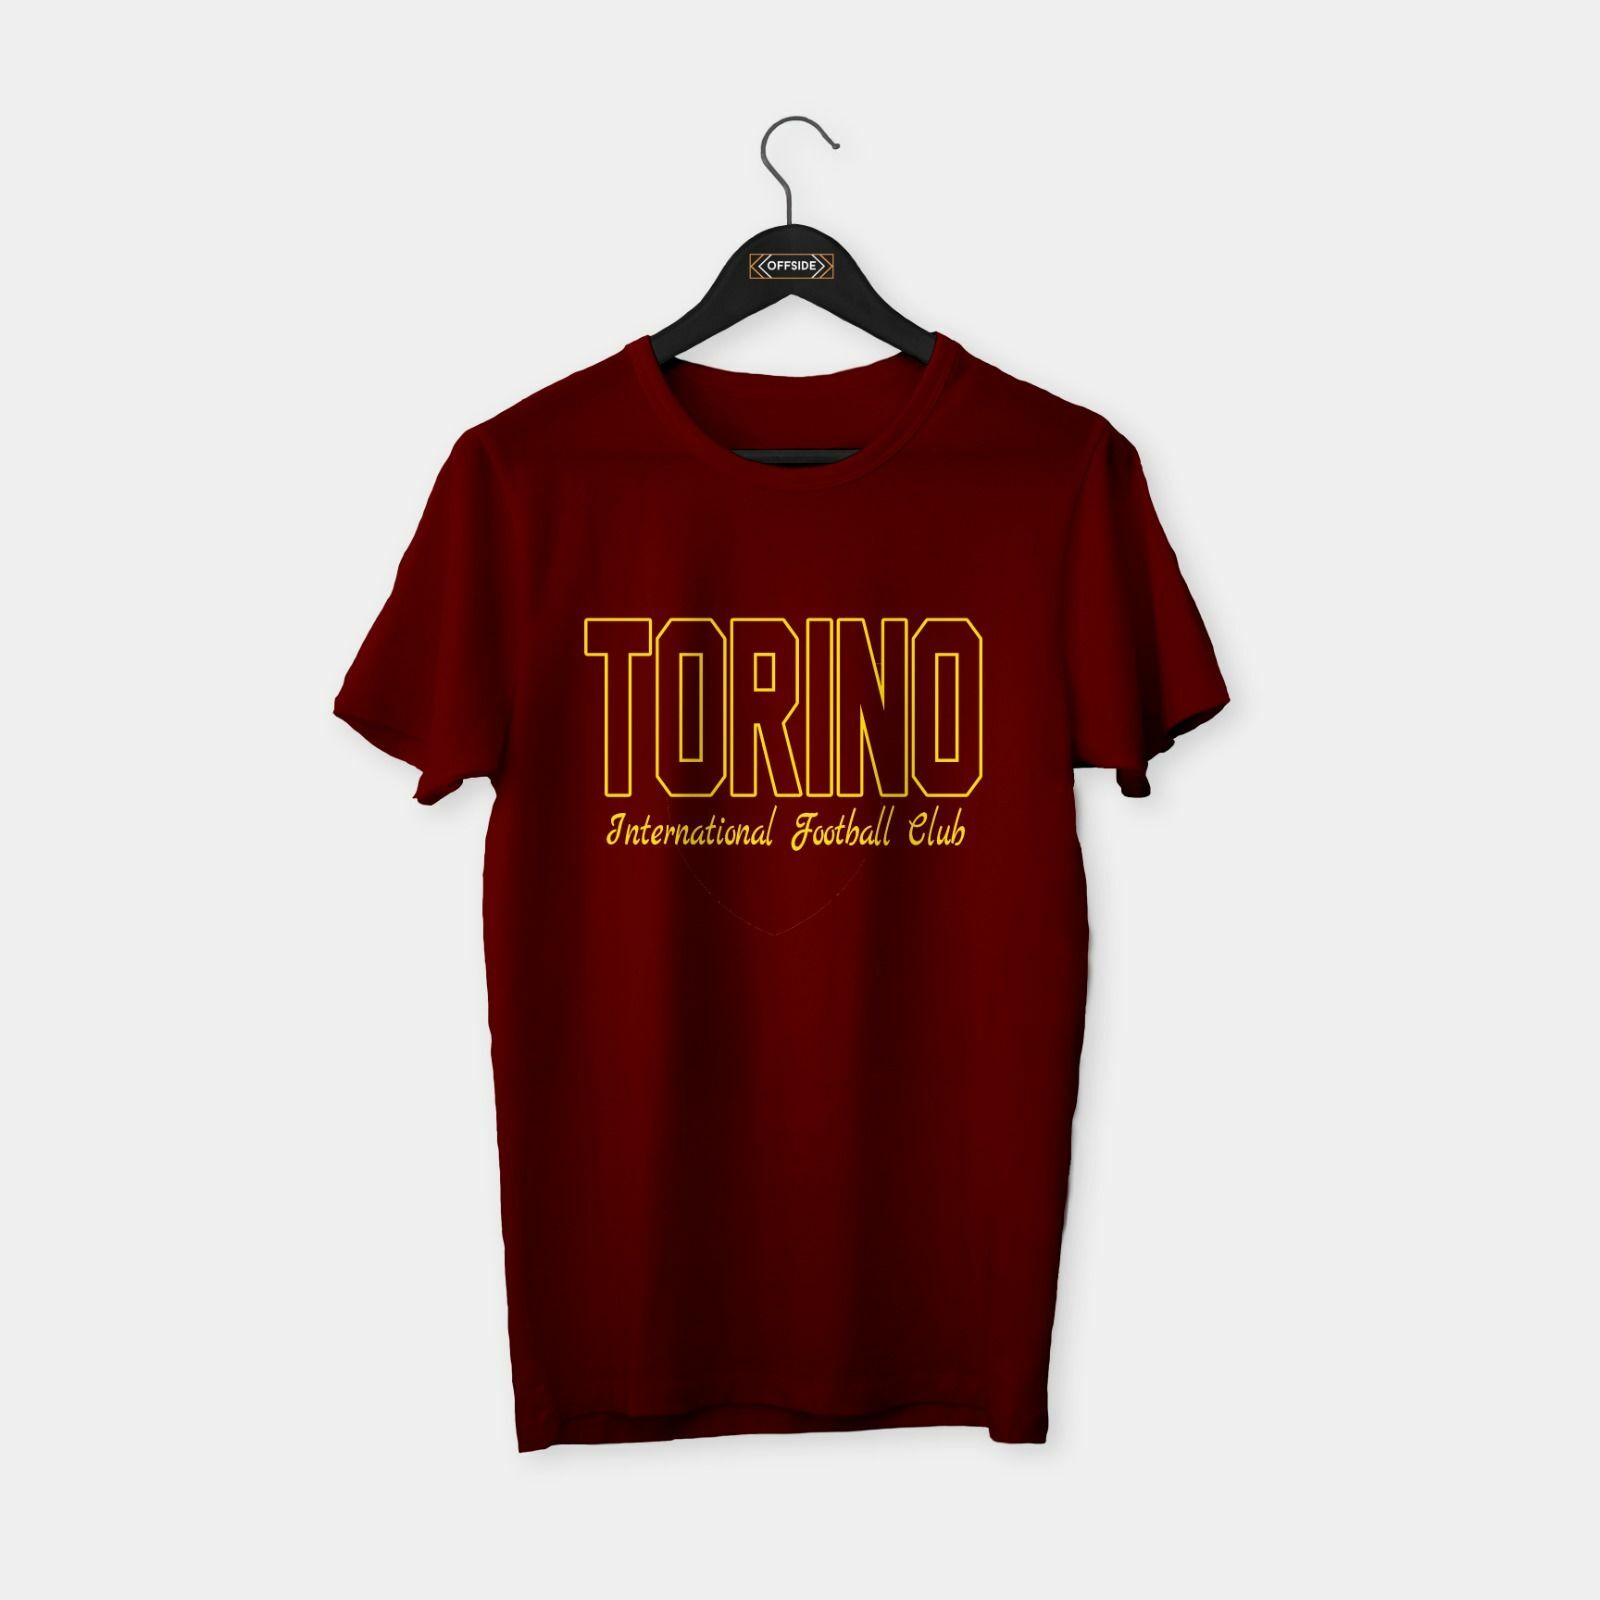 Torino T-shirt